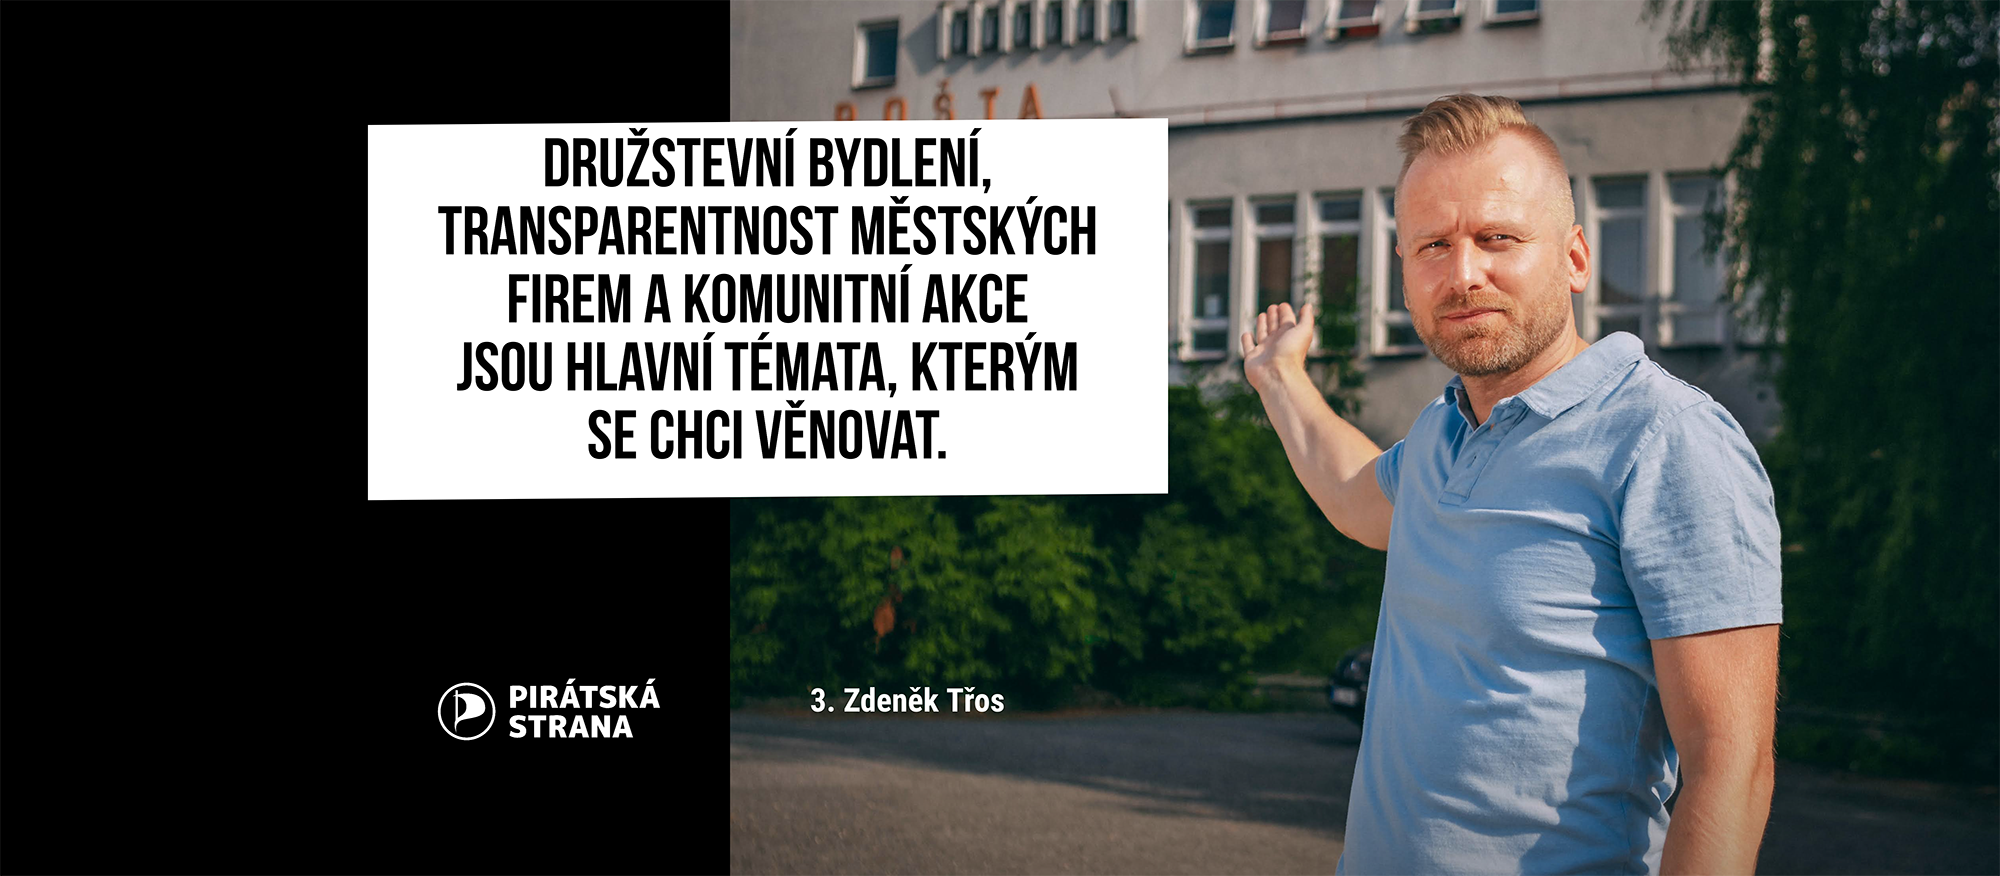 Zdeněk Třos: „Družstevní bydlení, transparentnost městských firem a komunitní akce jsou hlavní témata, kterým se chci věnovat. "